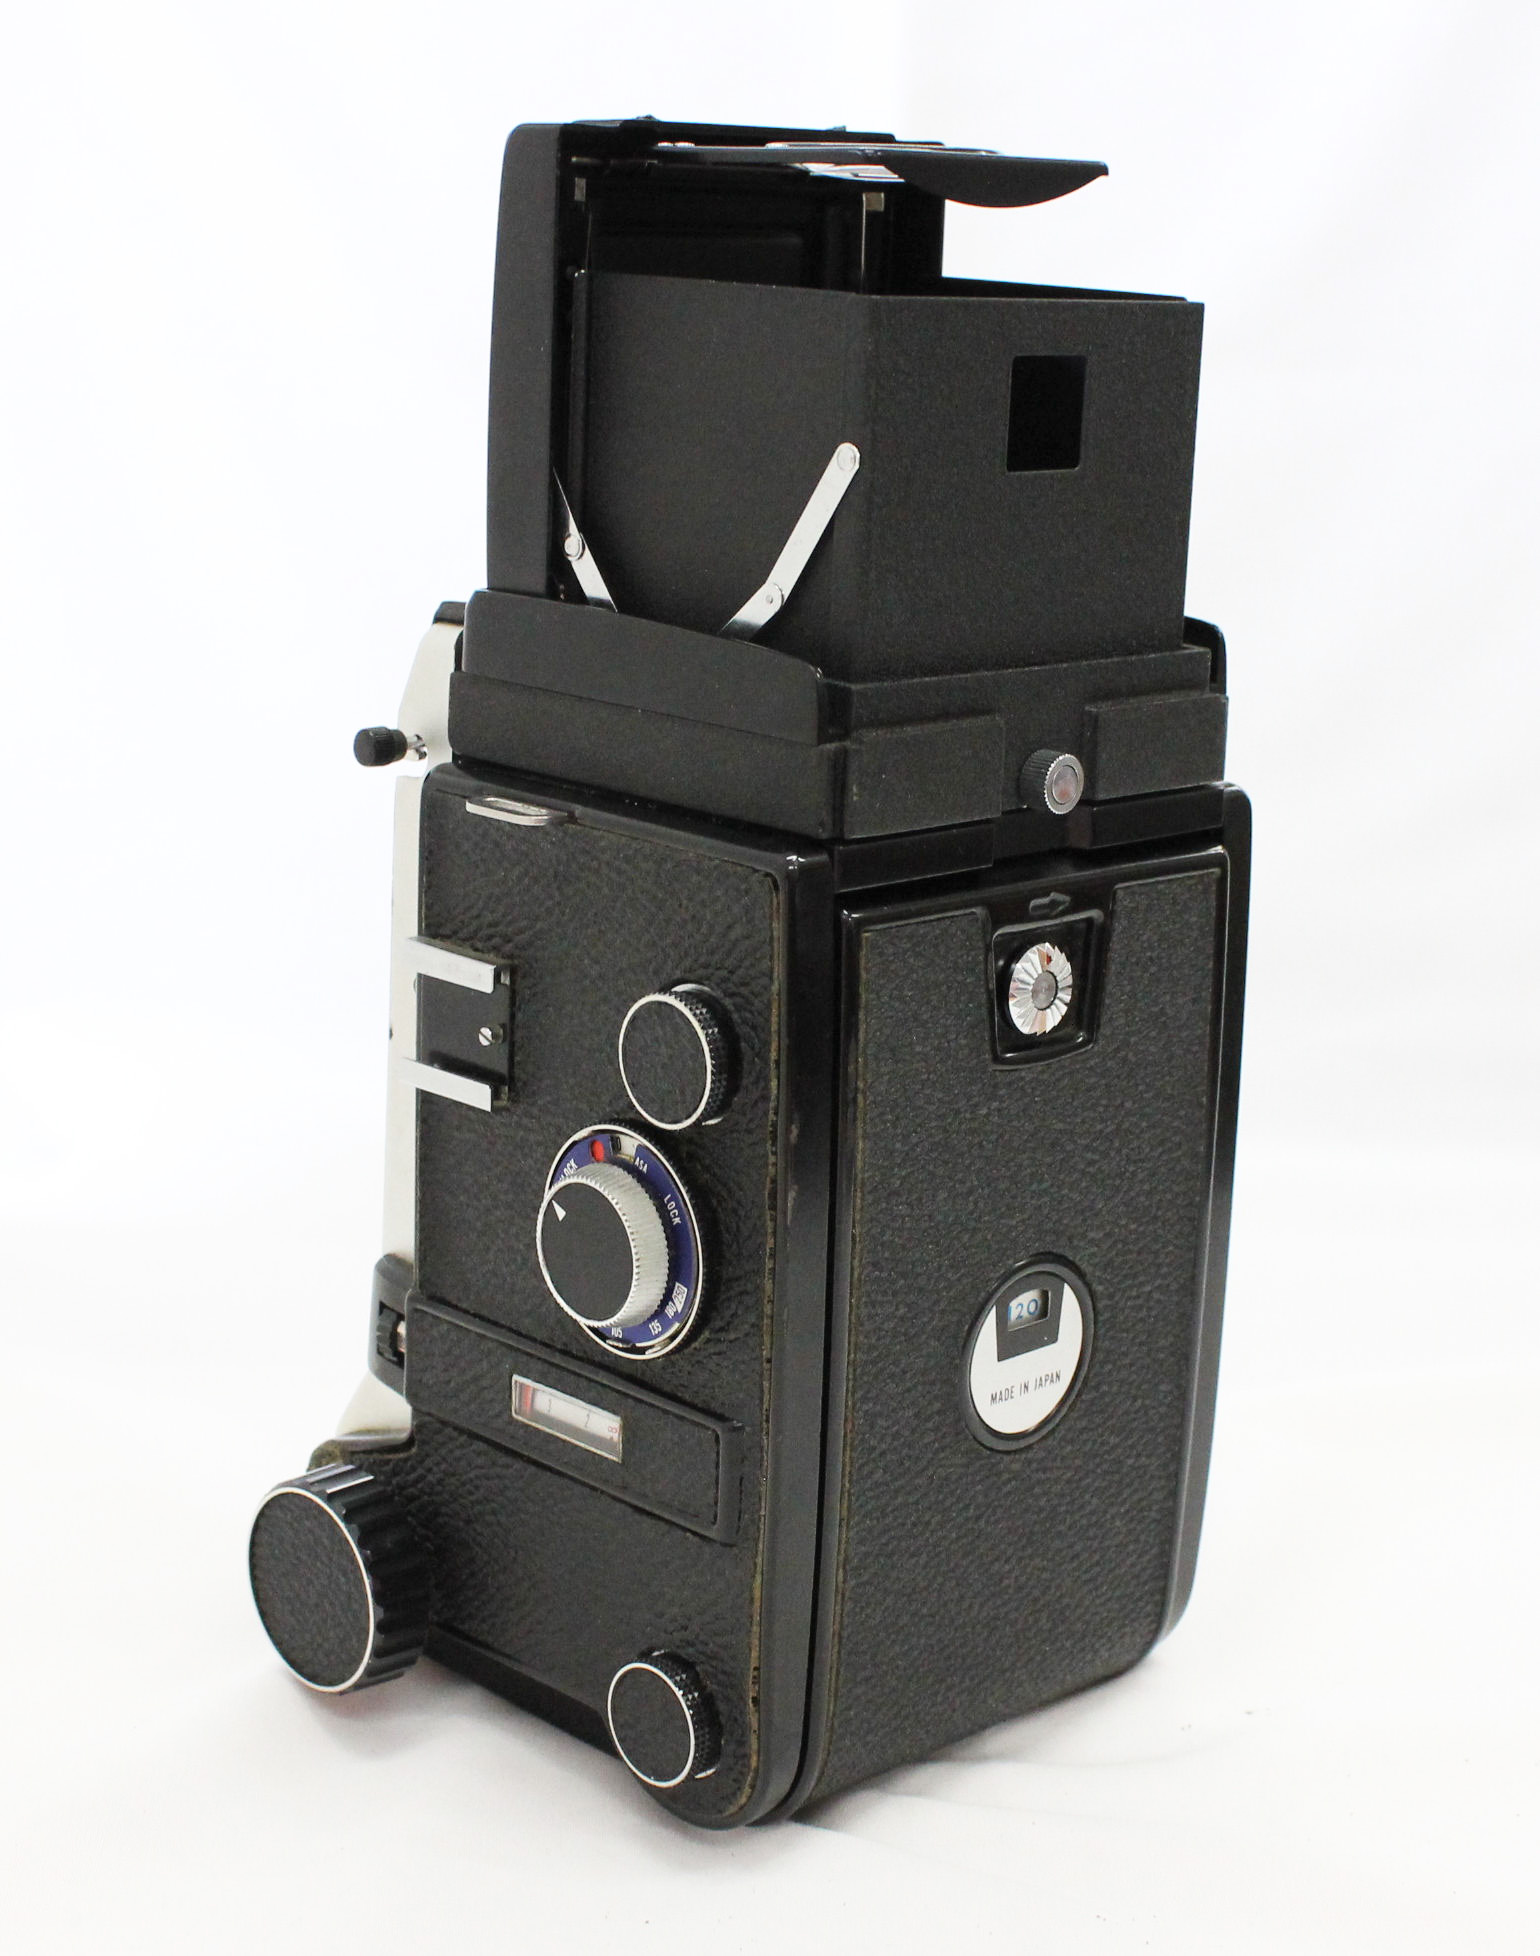  Mamiya C330 Professional Camera with Mamiya-Sekor DS 105mm F3.5 Blue Dot Lens from Japan Photo 3